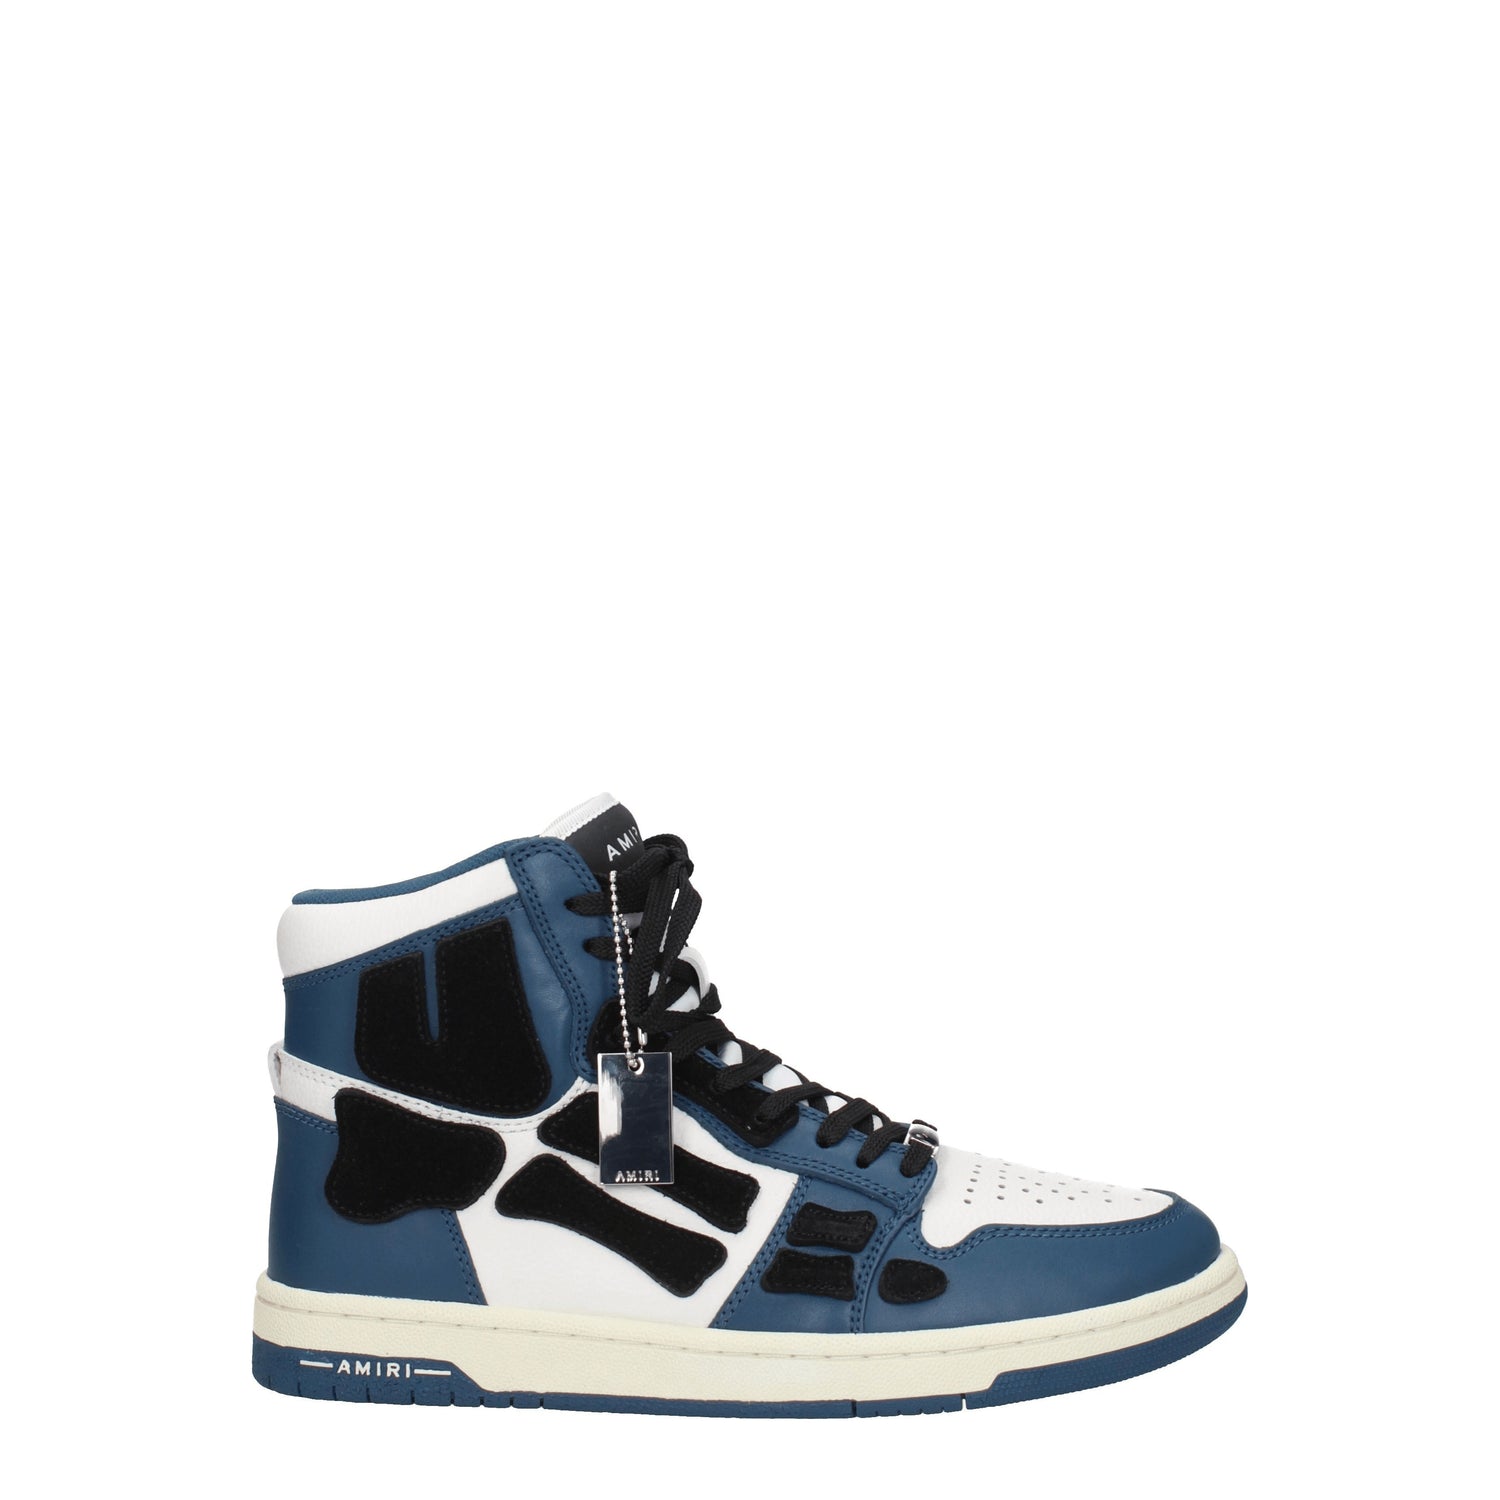 Amiri Sneakers Uomo Pelle Bianco Blu Navy